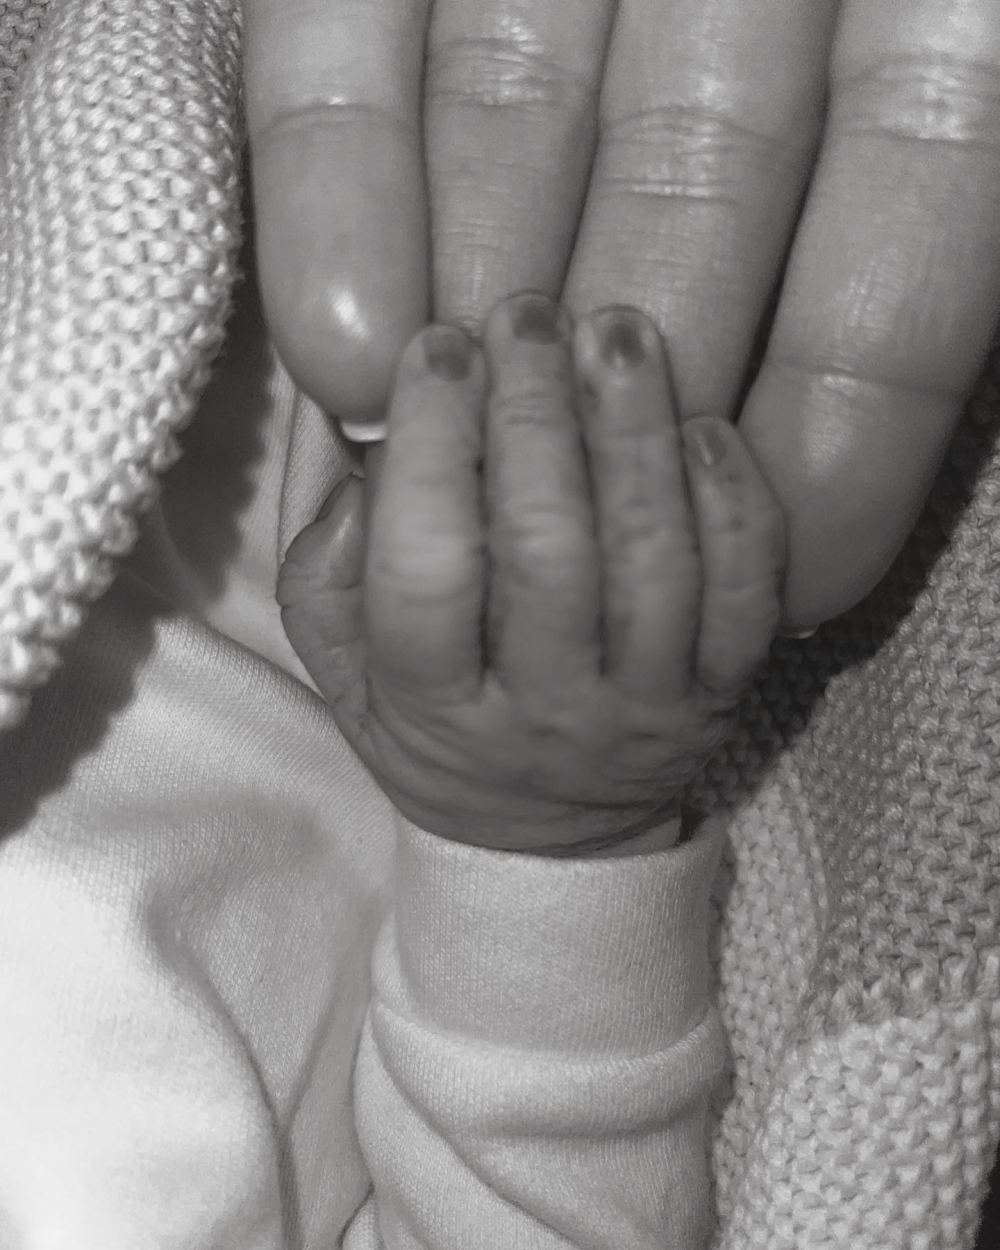 The Only Way Is Essex's Lauren Goodger Announces Death of Her Newborn Baby Instagram